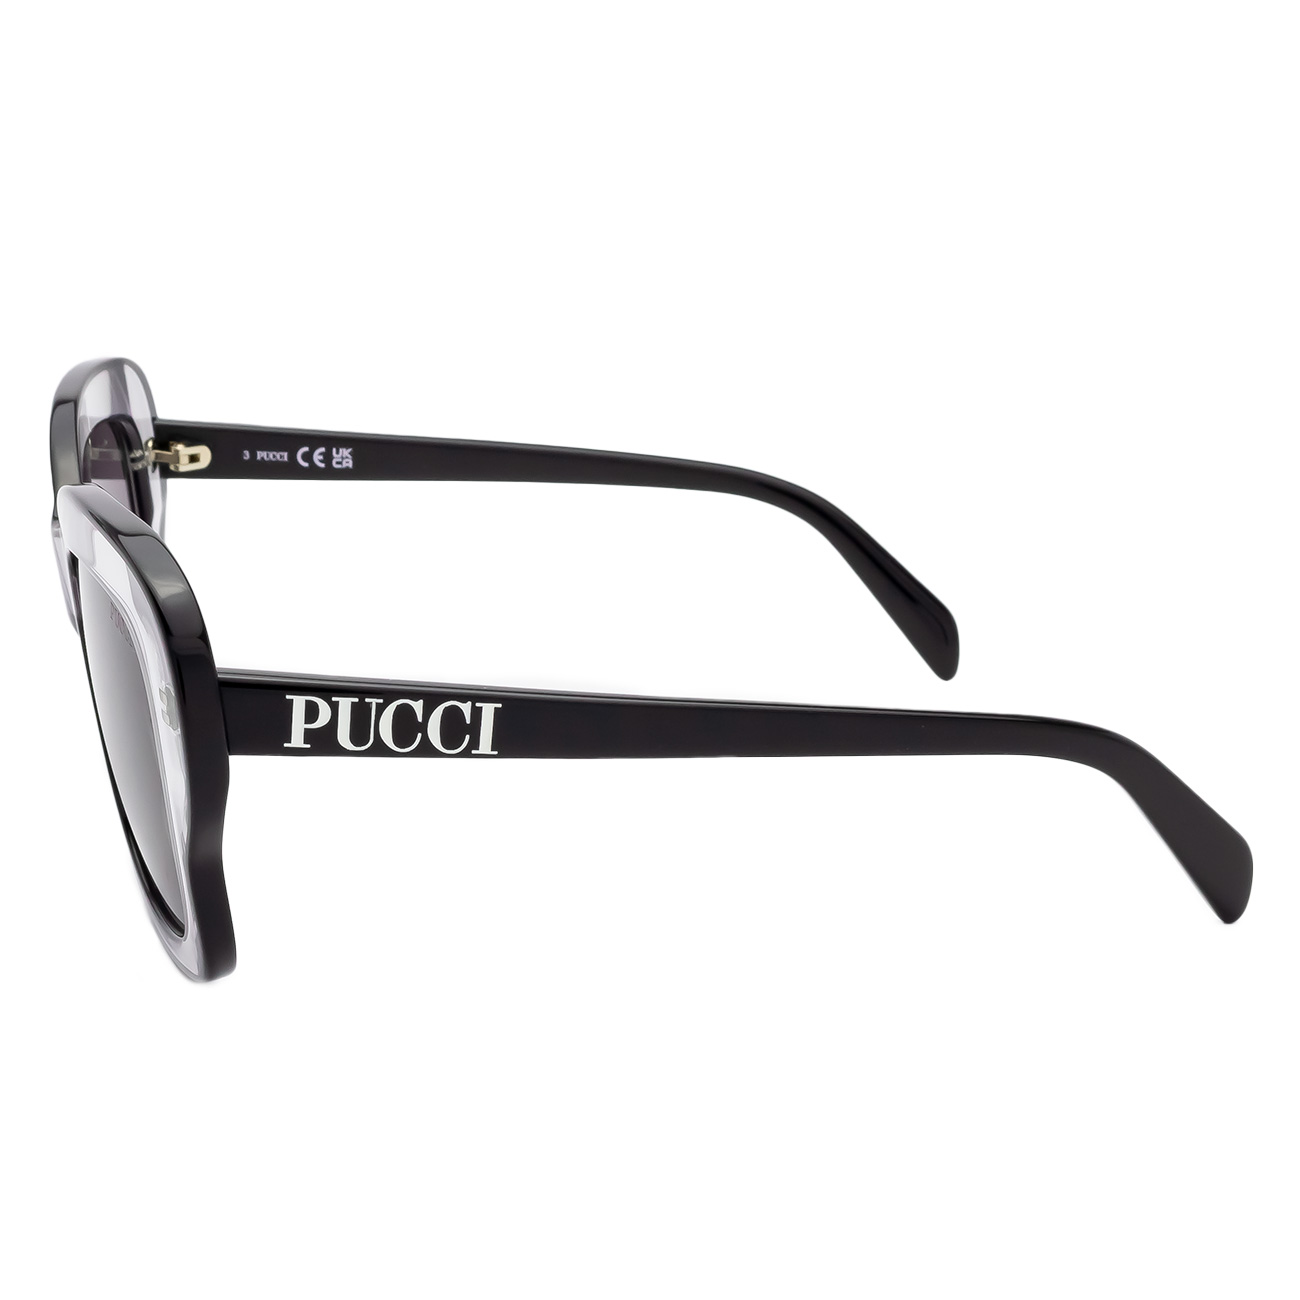 Óculos de Sol Emilio Pucci EP220 20A Cinza Transparente